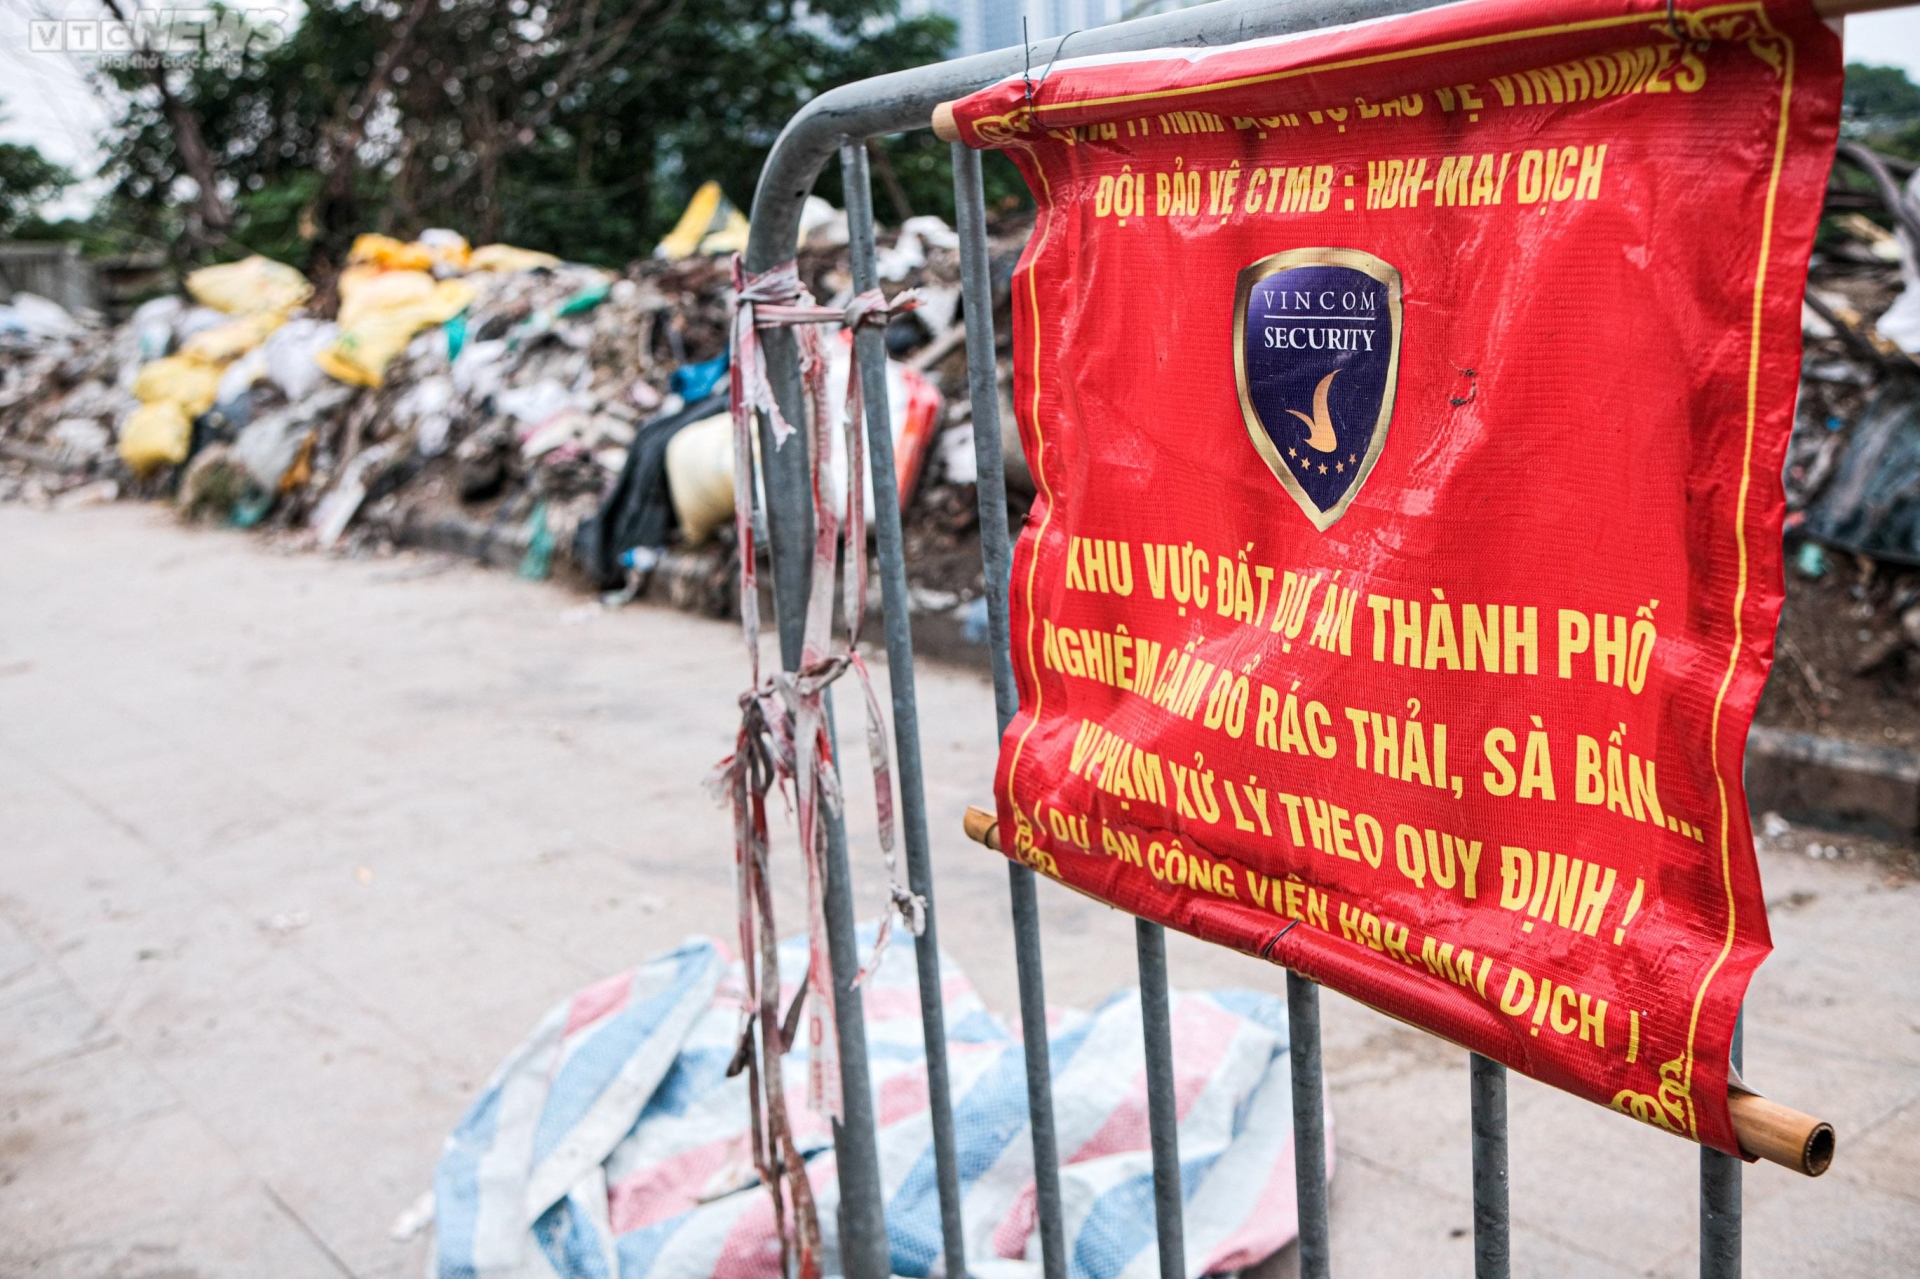 Hà Nội: Vỉa hè công viên Mai Dịch ngập rác thải, bị chiếm dụng làm bãi đỗ xe - Ảnh 6.